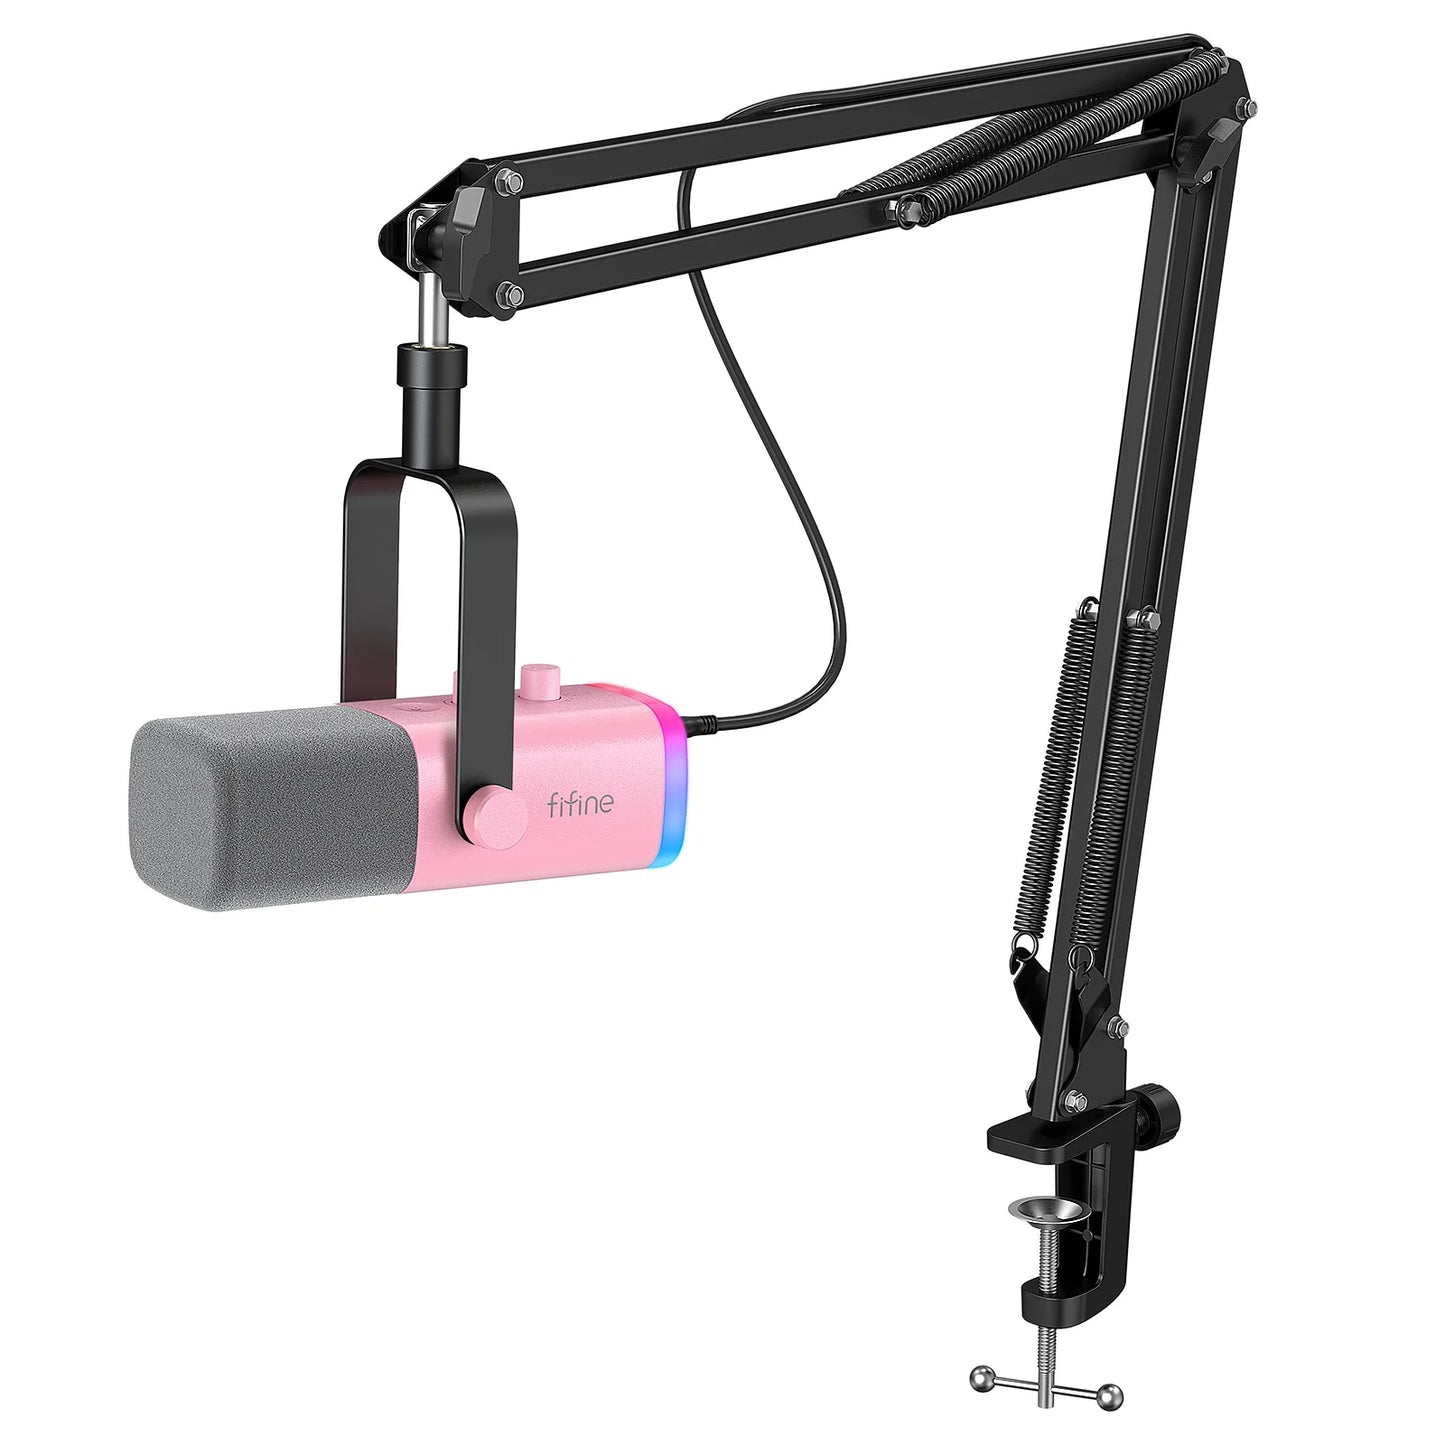 Kit de Microfone Dinâmico XLR Fifine com Braço Articulado: Qualidade Sonora Profissional e Conveniência de Uso - IA De Ofertas